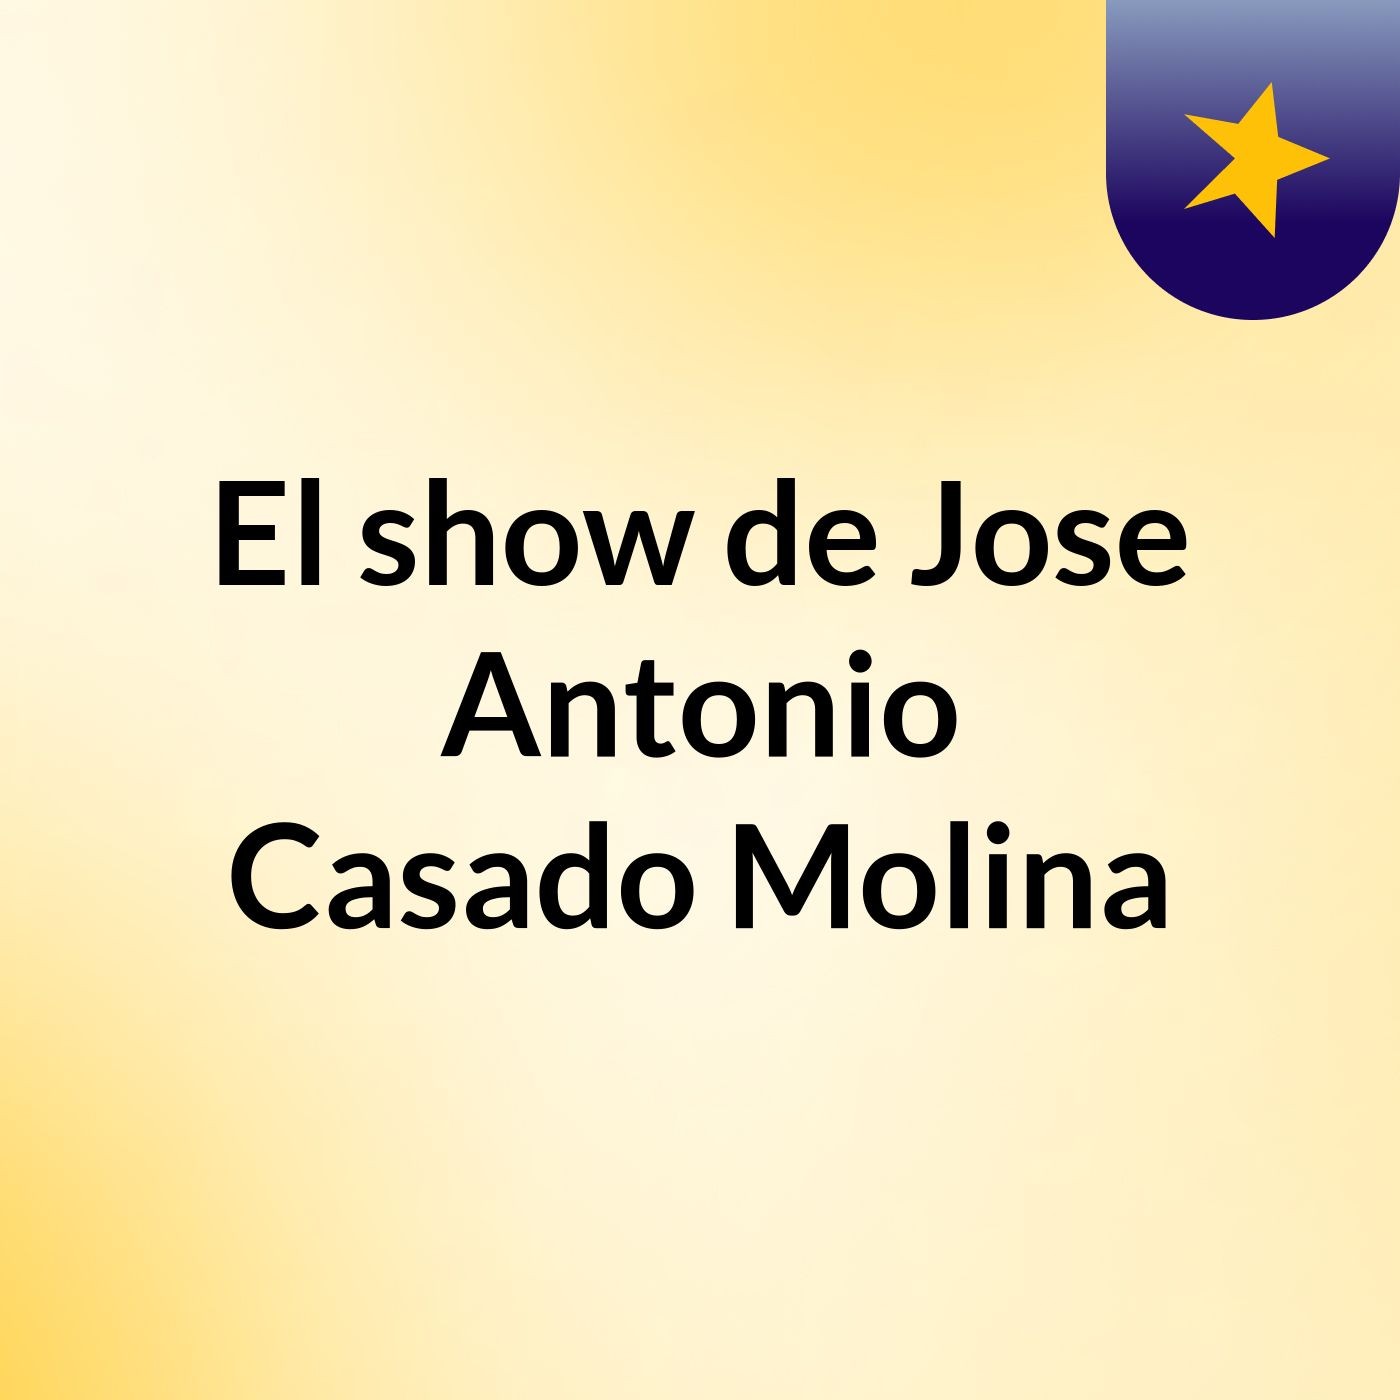 El show de Jose Antonio Casado Molina